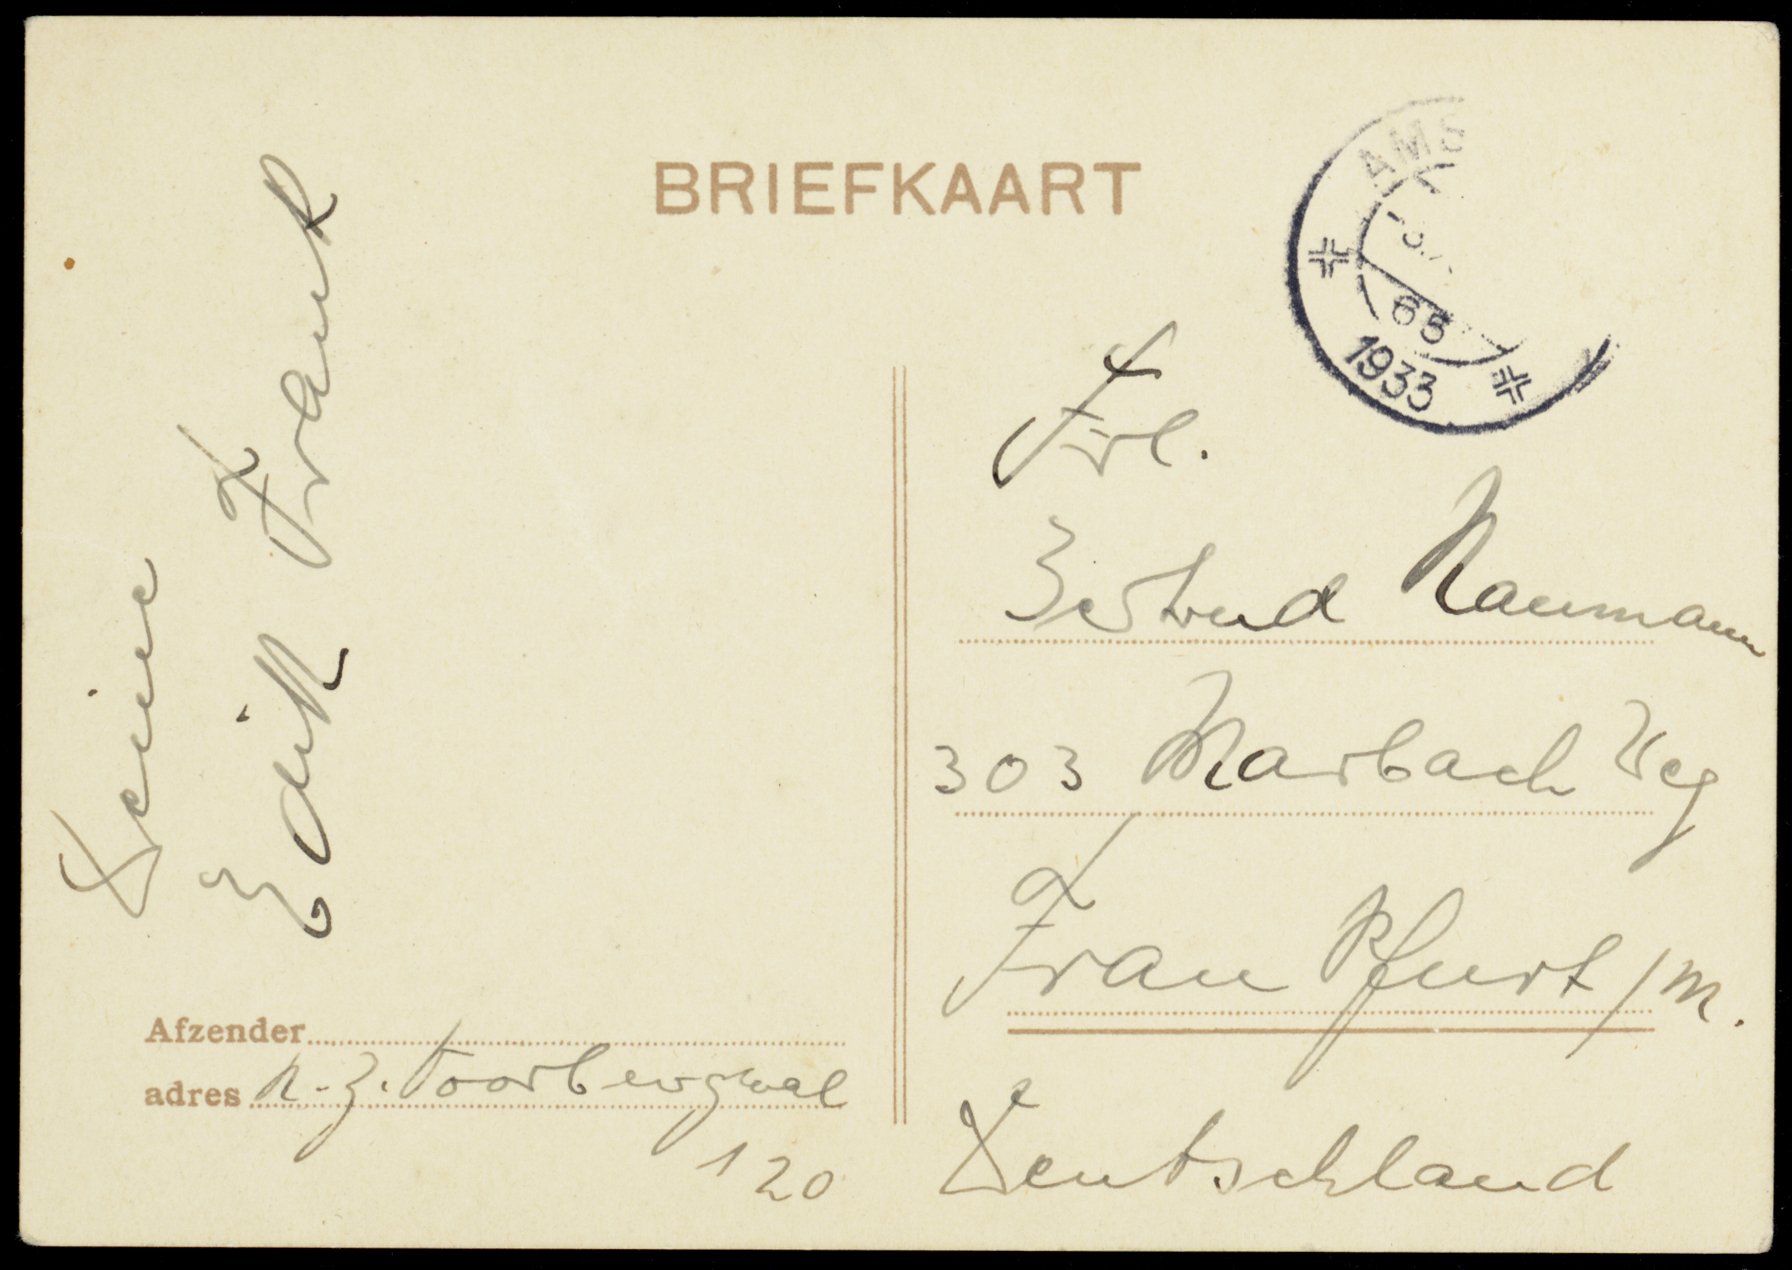 Postales y cartas de Edith | La Casa de Ana Frank